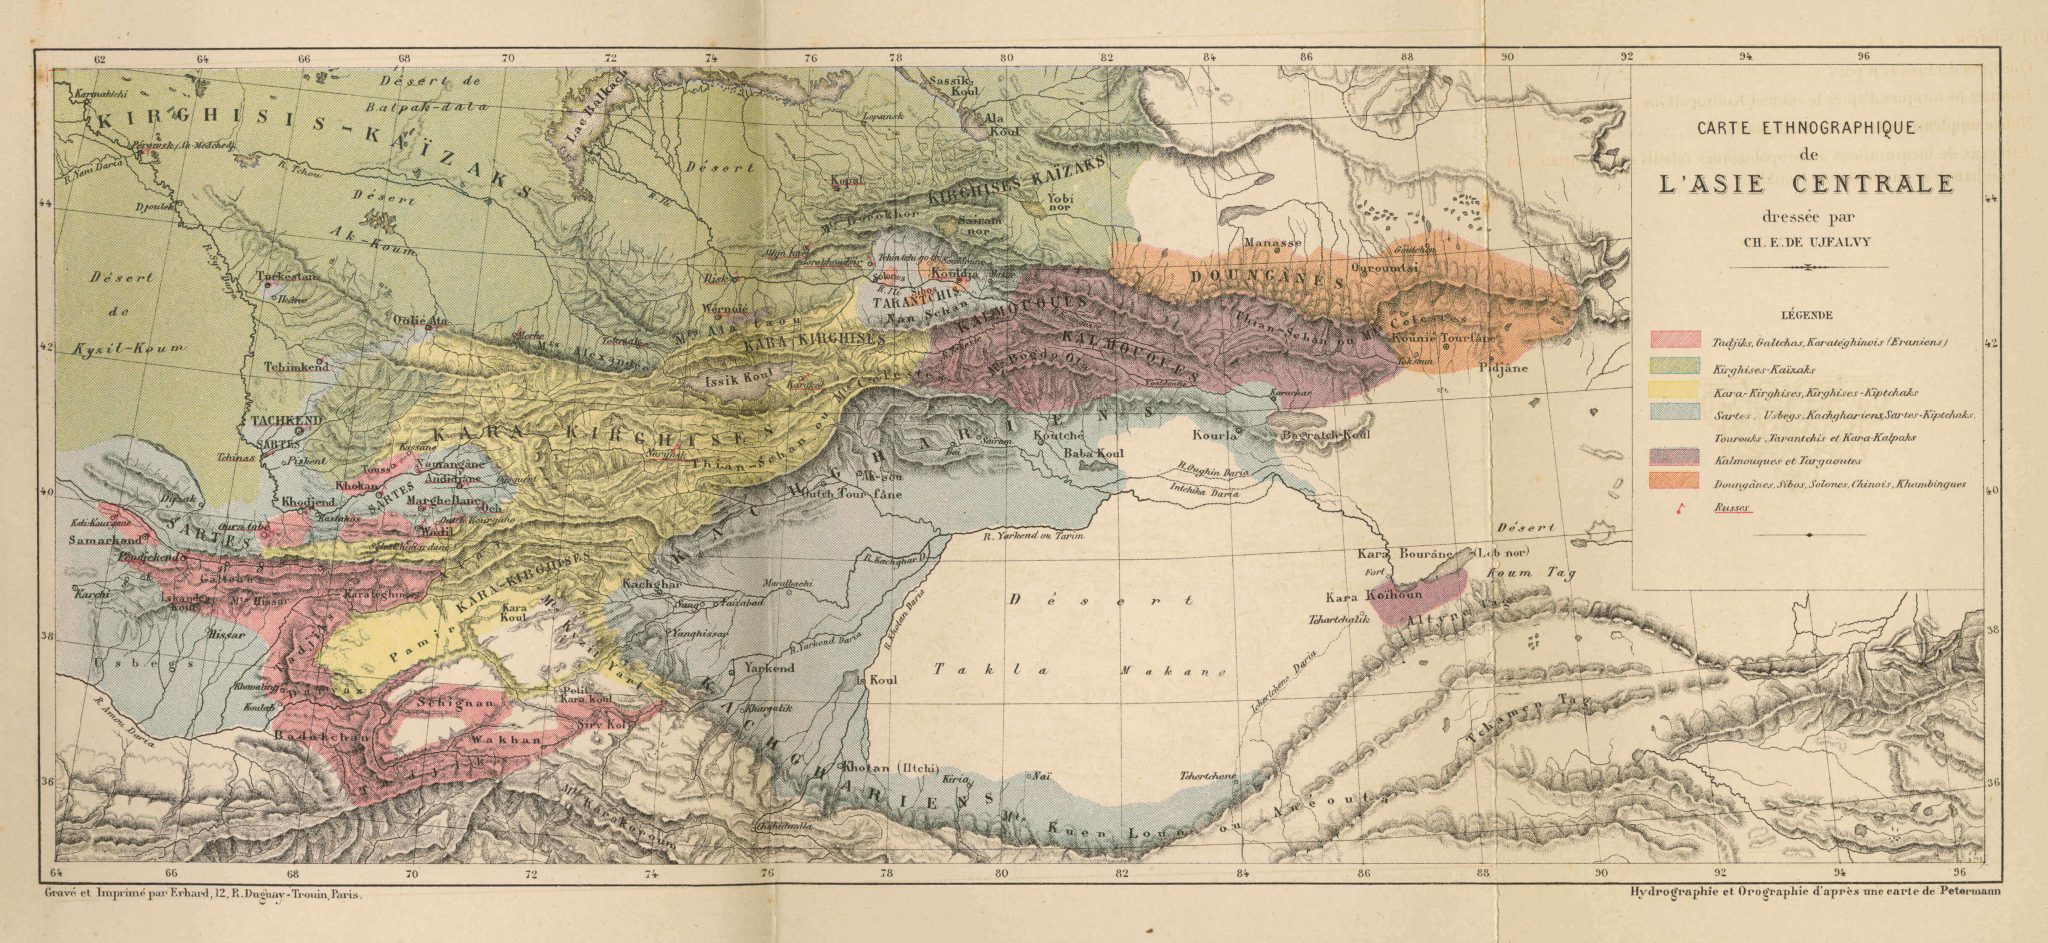 Carte ethnographique de l'Asie centrale 1878